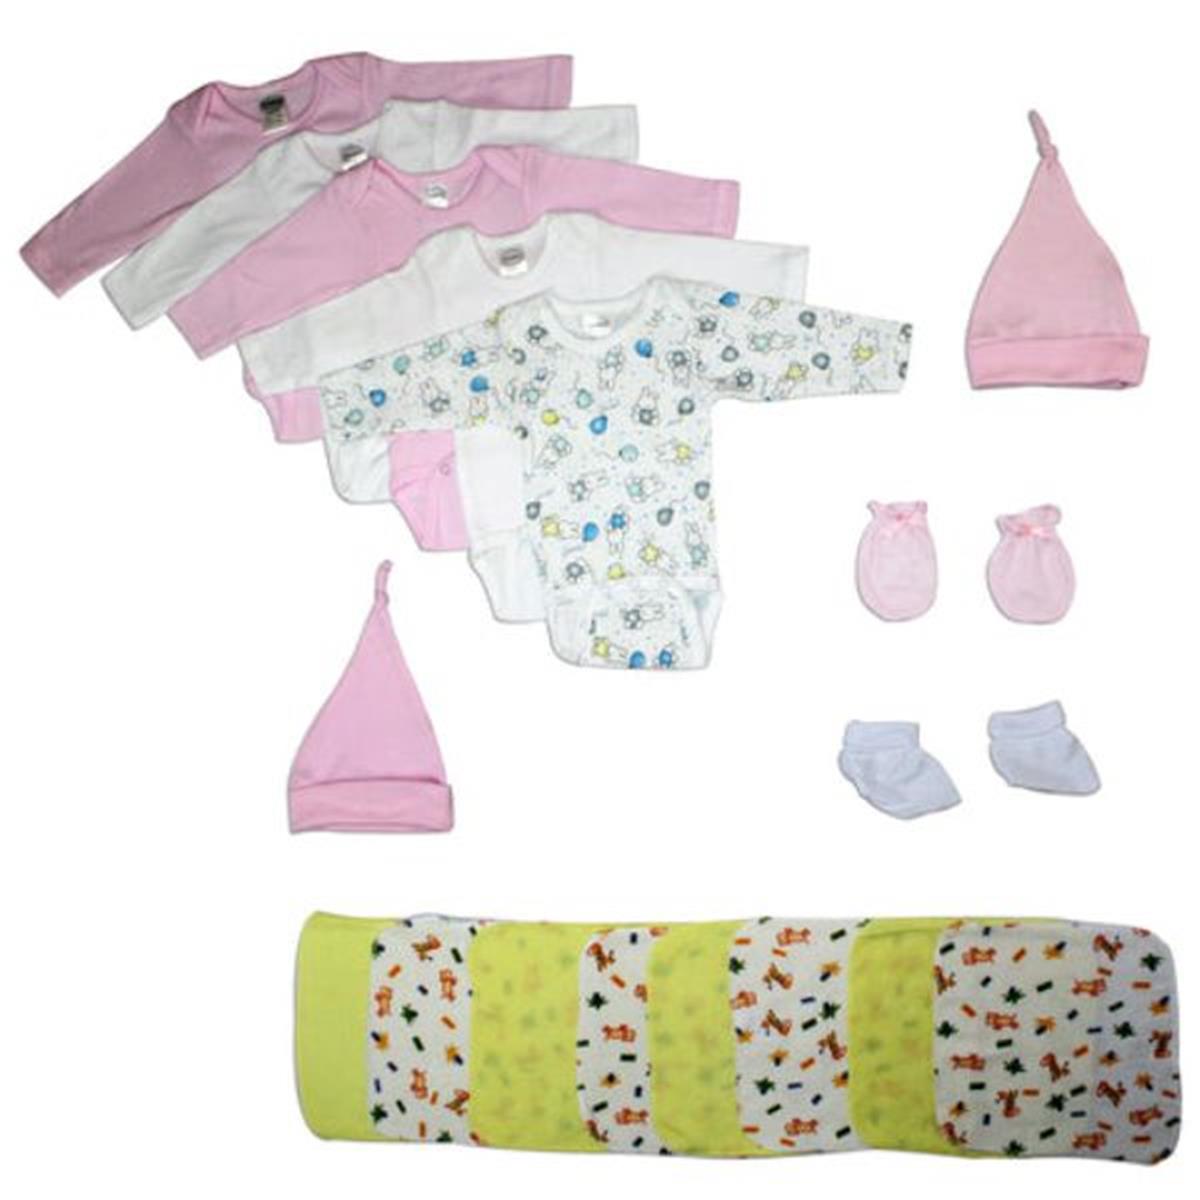 Bambini LS-0062 Newborn Baby Girl Layette Baby Shower Gift Set&#44; White & Pink - Newborn